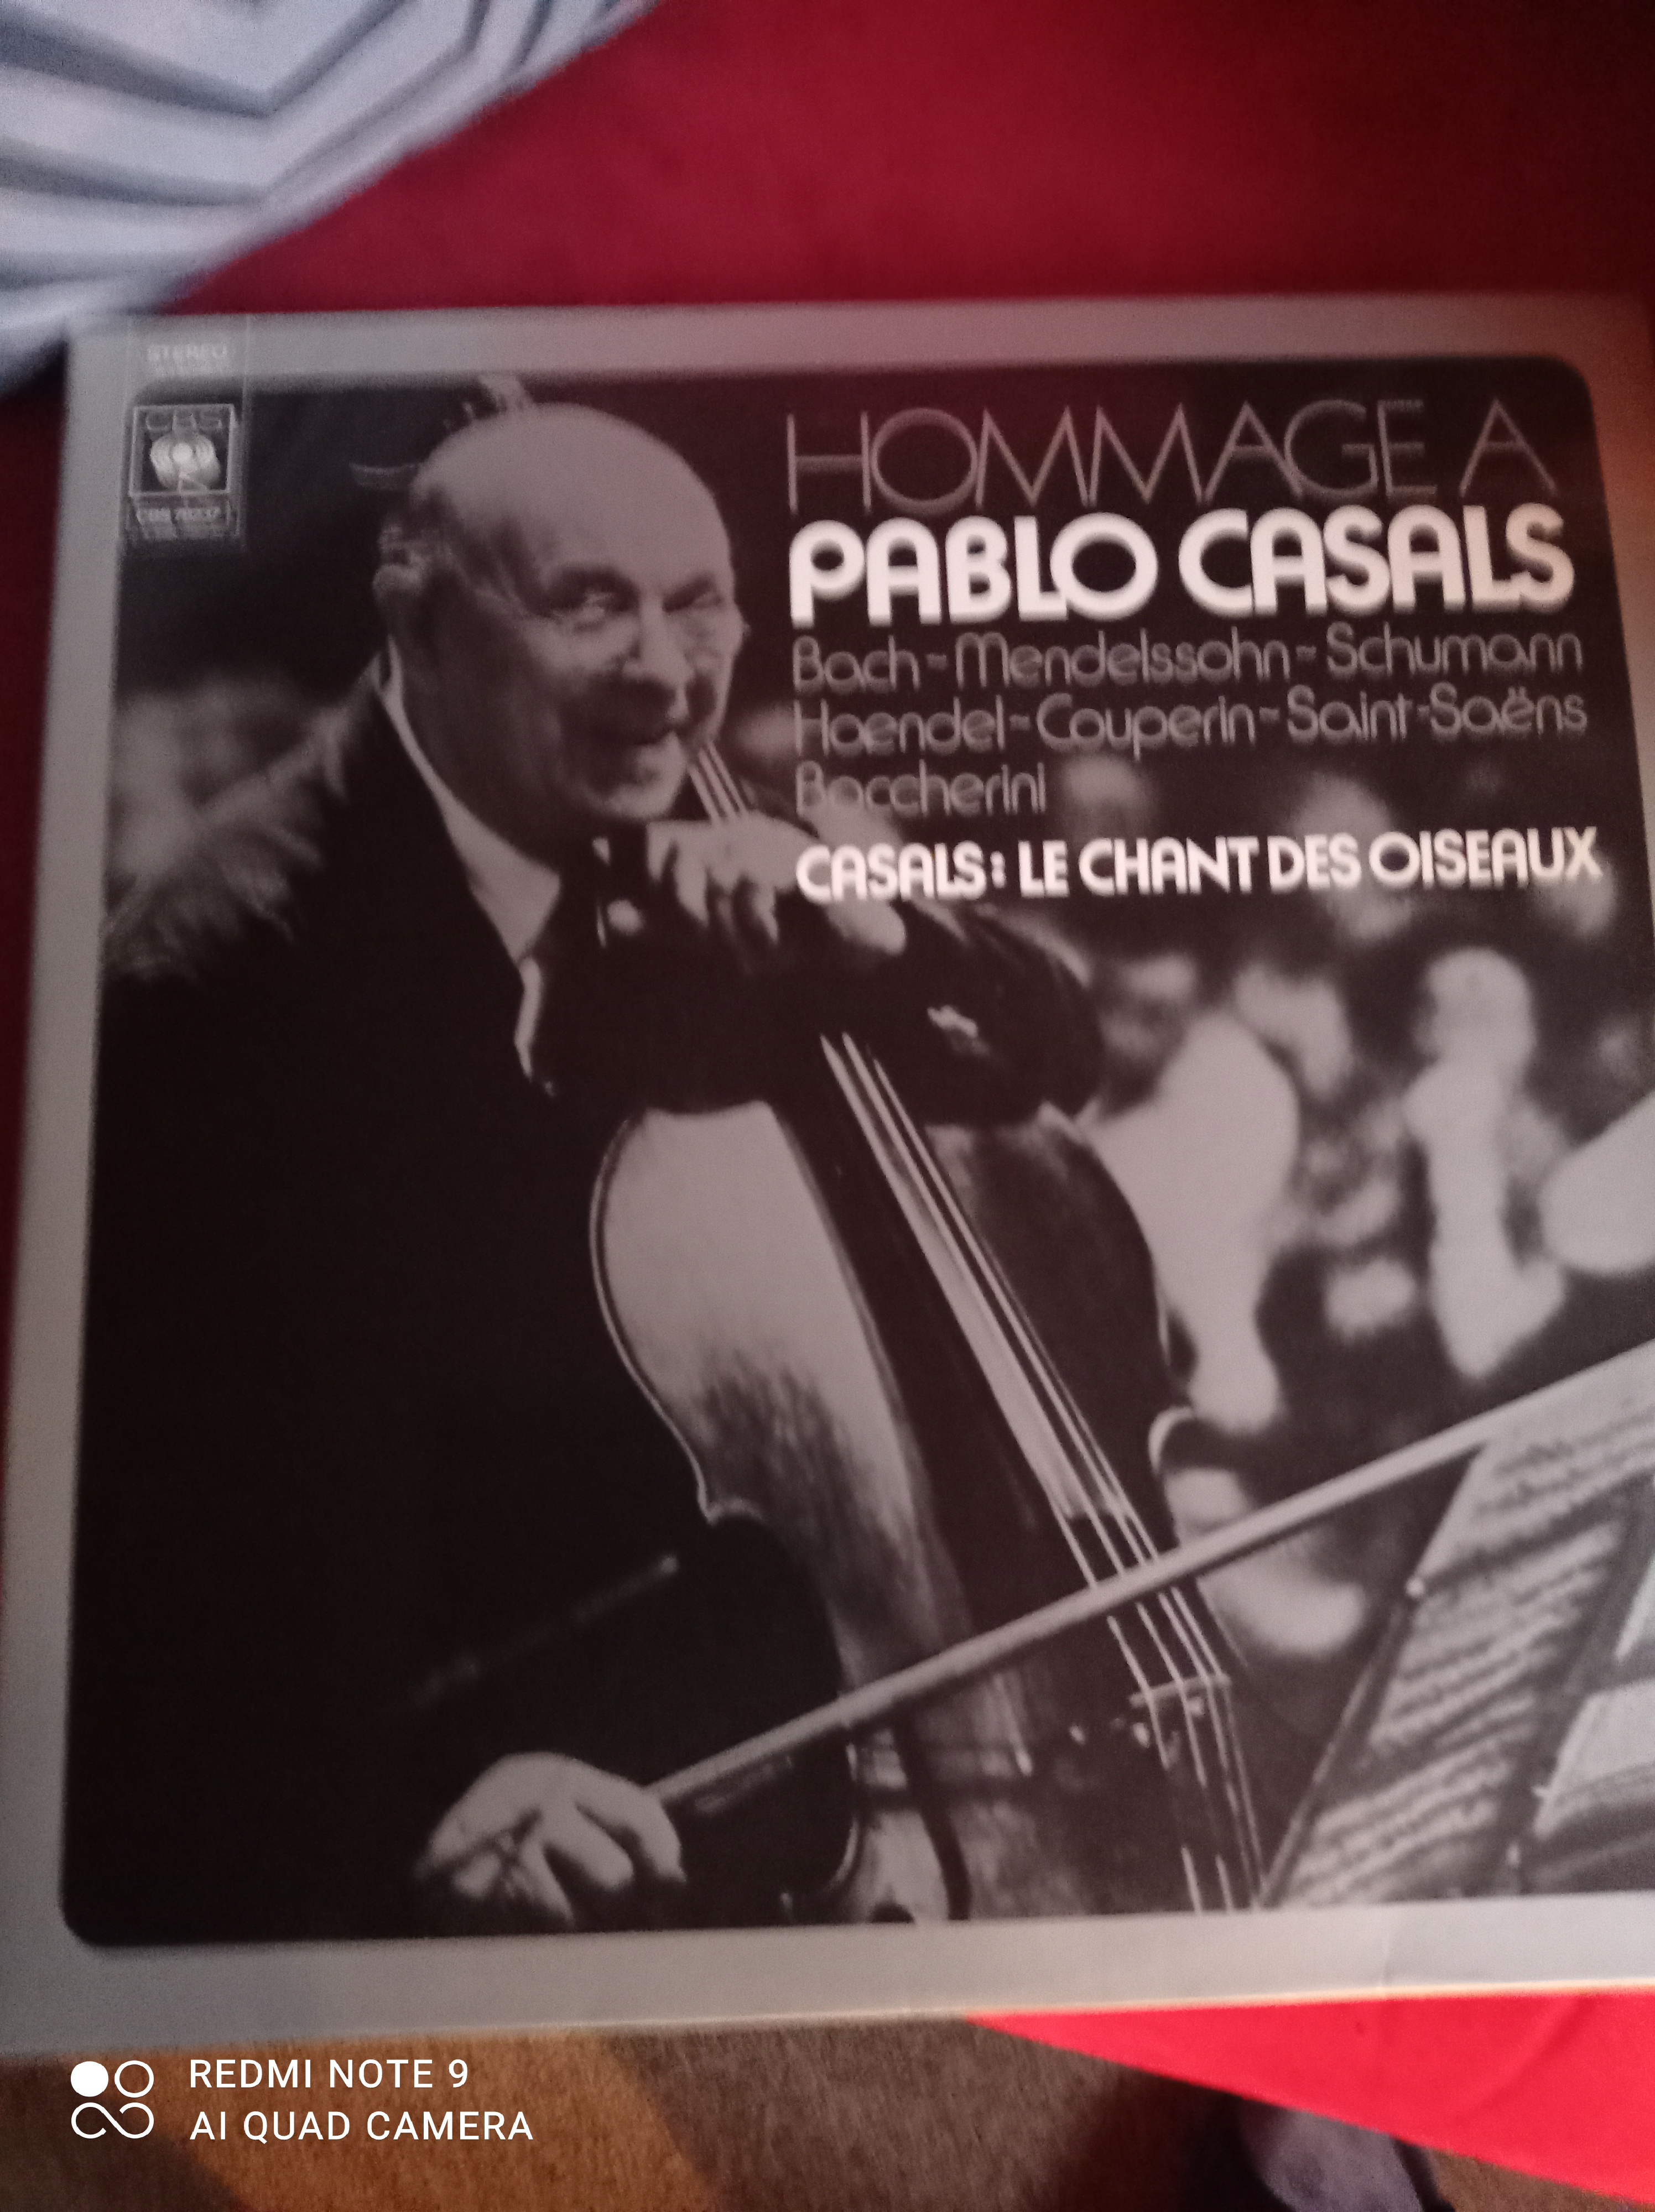 Buy vinyl artist% Coffret hommage à Pablo Casals (Bach-Mendelssohn-Schumann-Haendel-) Casals le chant des oiseaux for sale